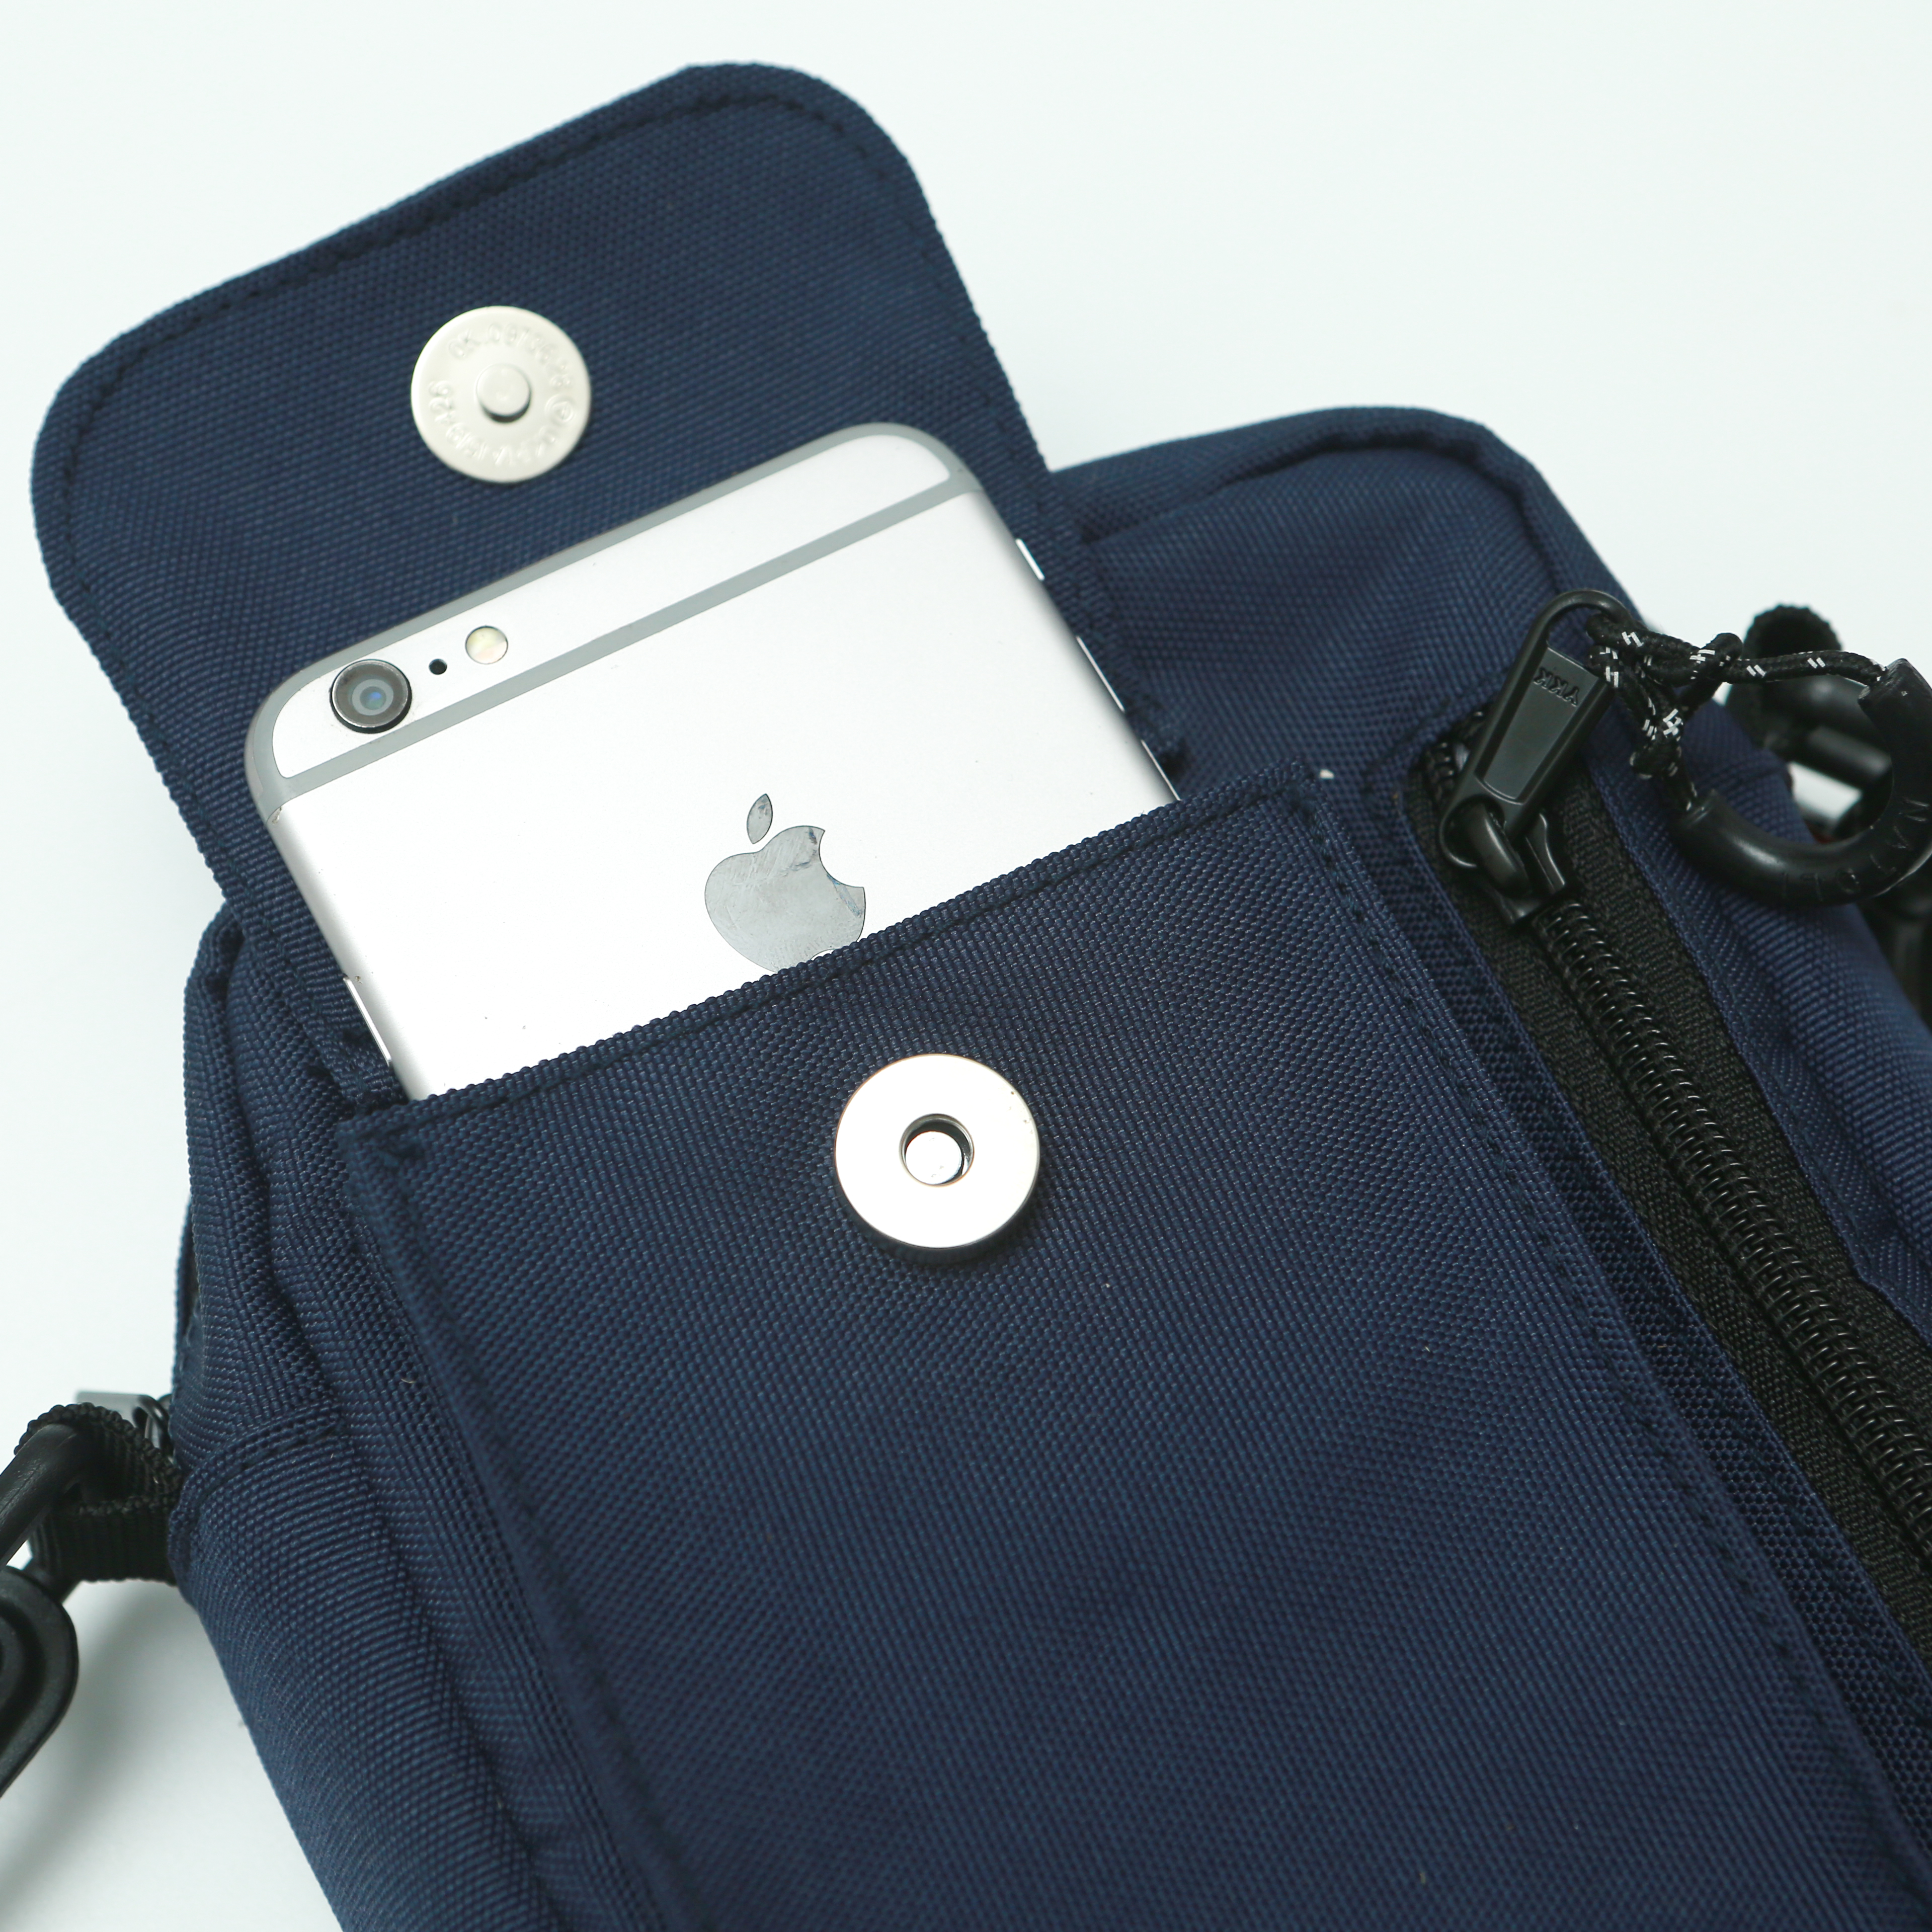 Túi đeo chéo unisex Street Crossbag chính hãng NATOLI chất vải canvas đi học đi chơi nhiều ngăn cá tính đơn giản nhỏ gọn